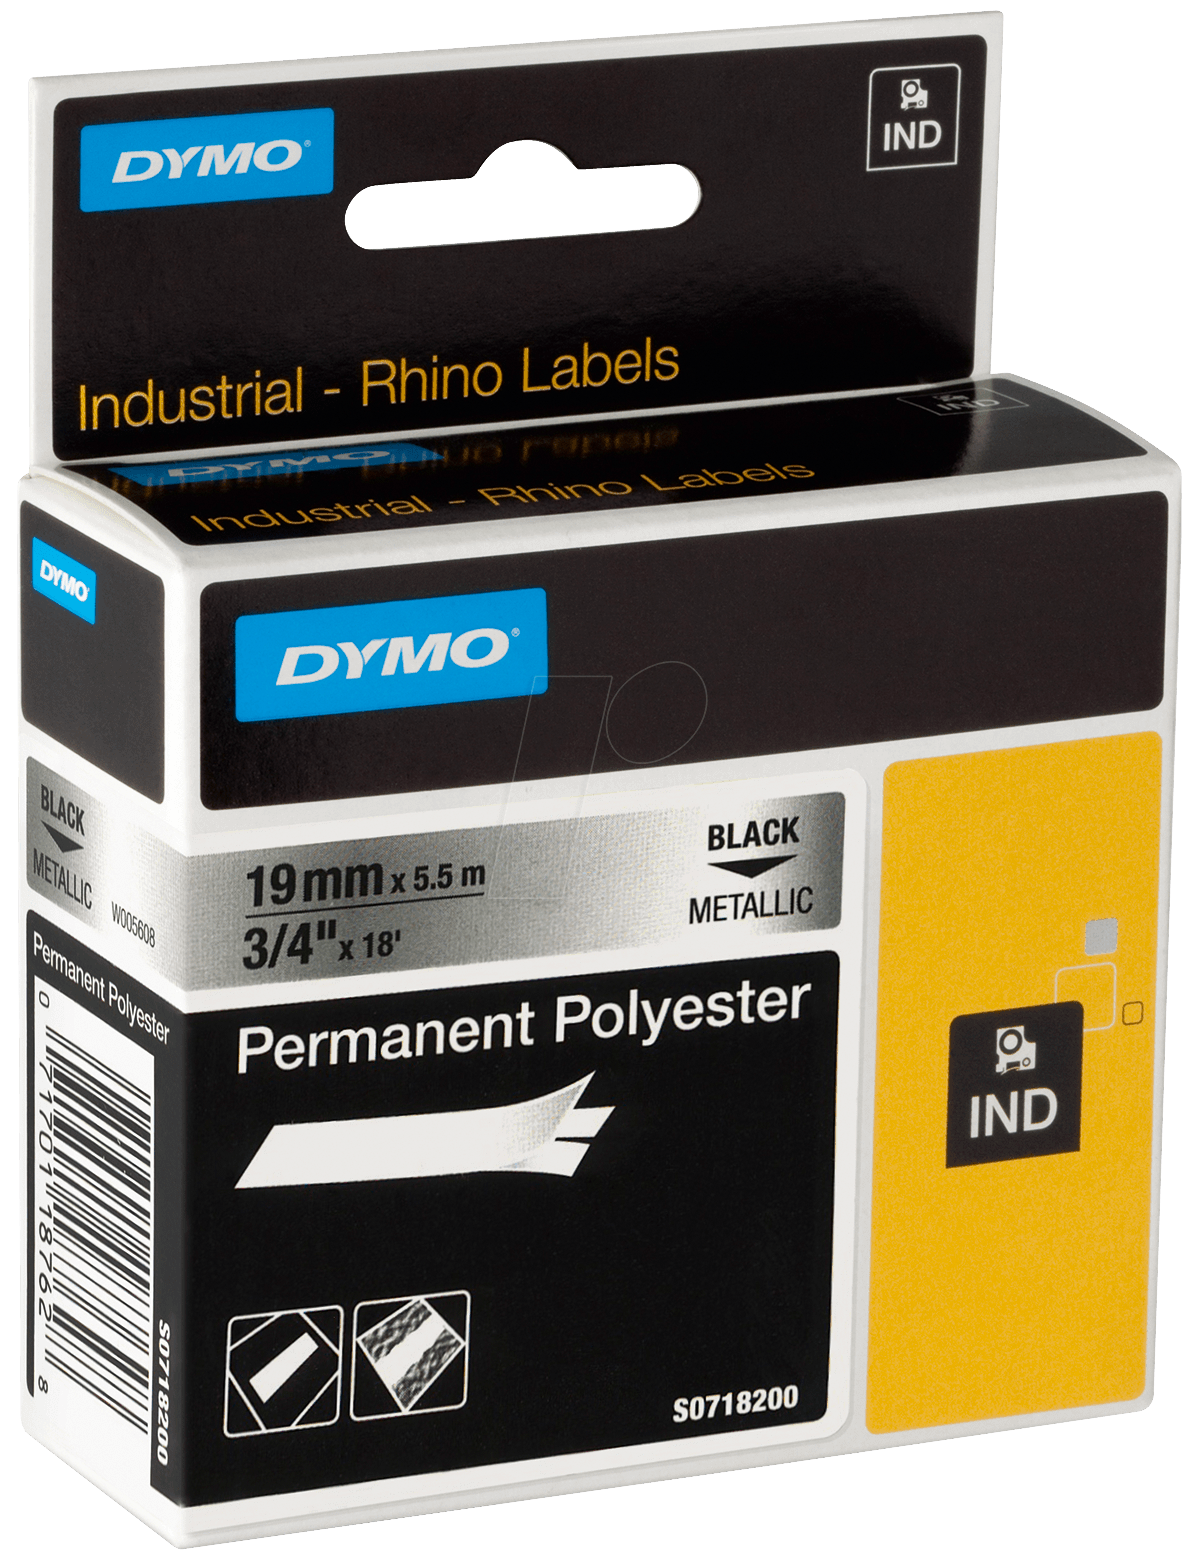 DYMO IND 18487 - DYMO IND Polyester, 19mm, schwarz/metallic von Dymo